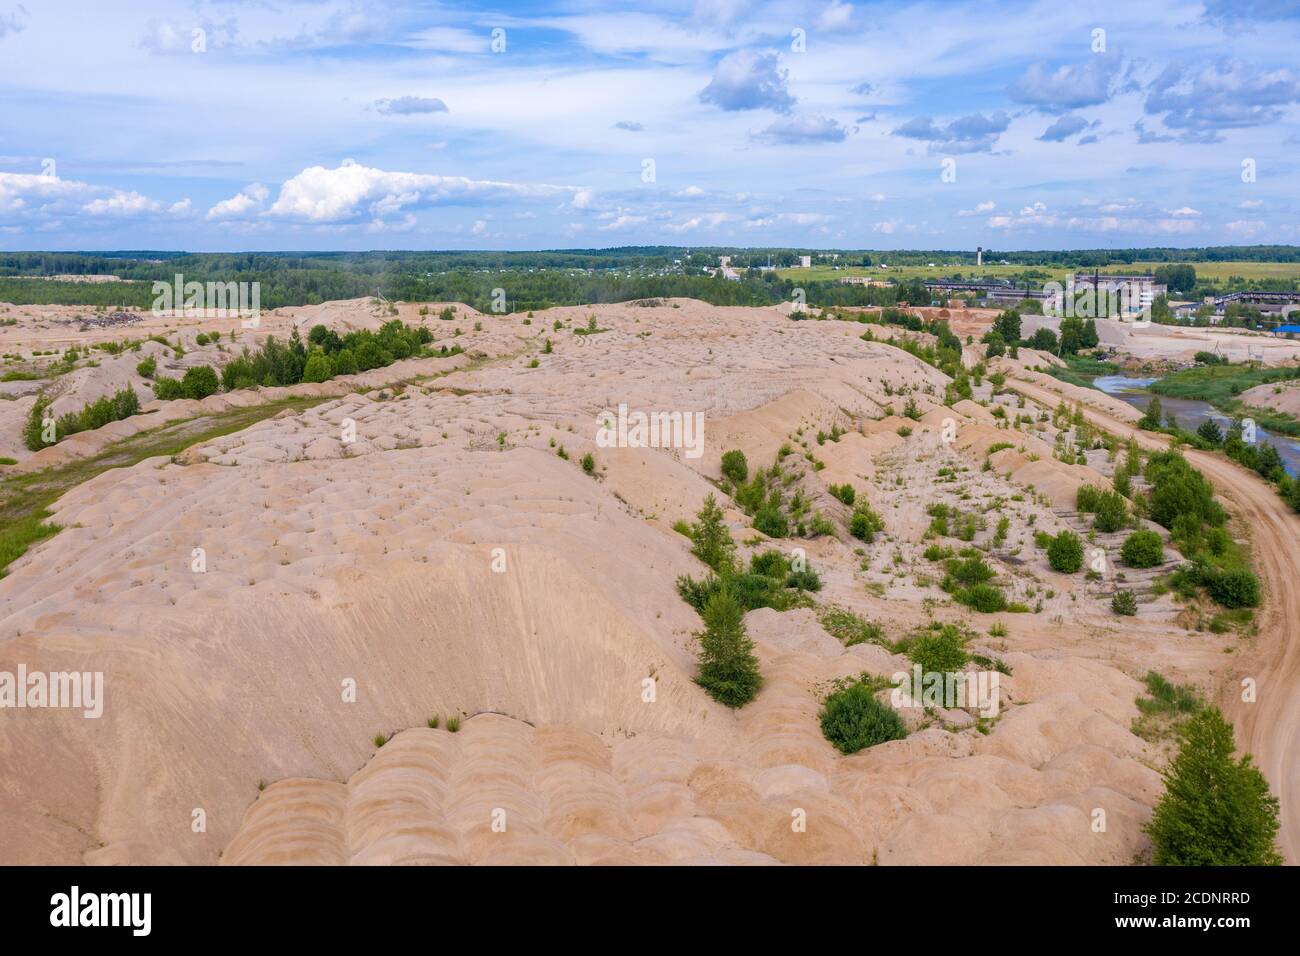 Sandsteinbruch in der Nähe des Dorfes Khromtsovo, Region Ivanovo, an einem sonnigen Sommertag, Foto von einer Drohne aufgenommen. Stockfoto